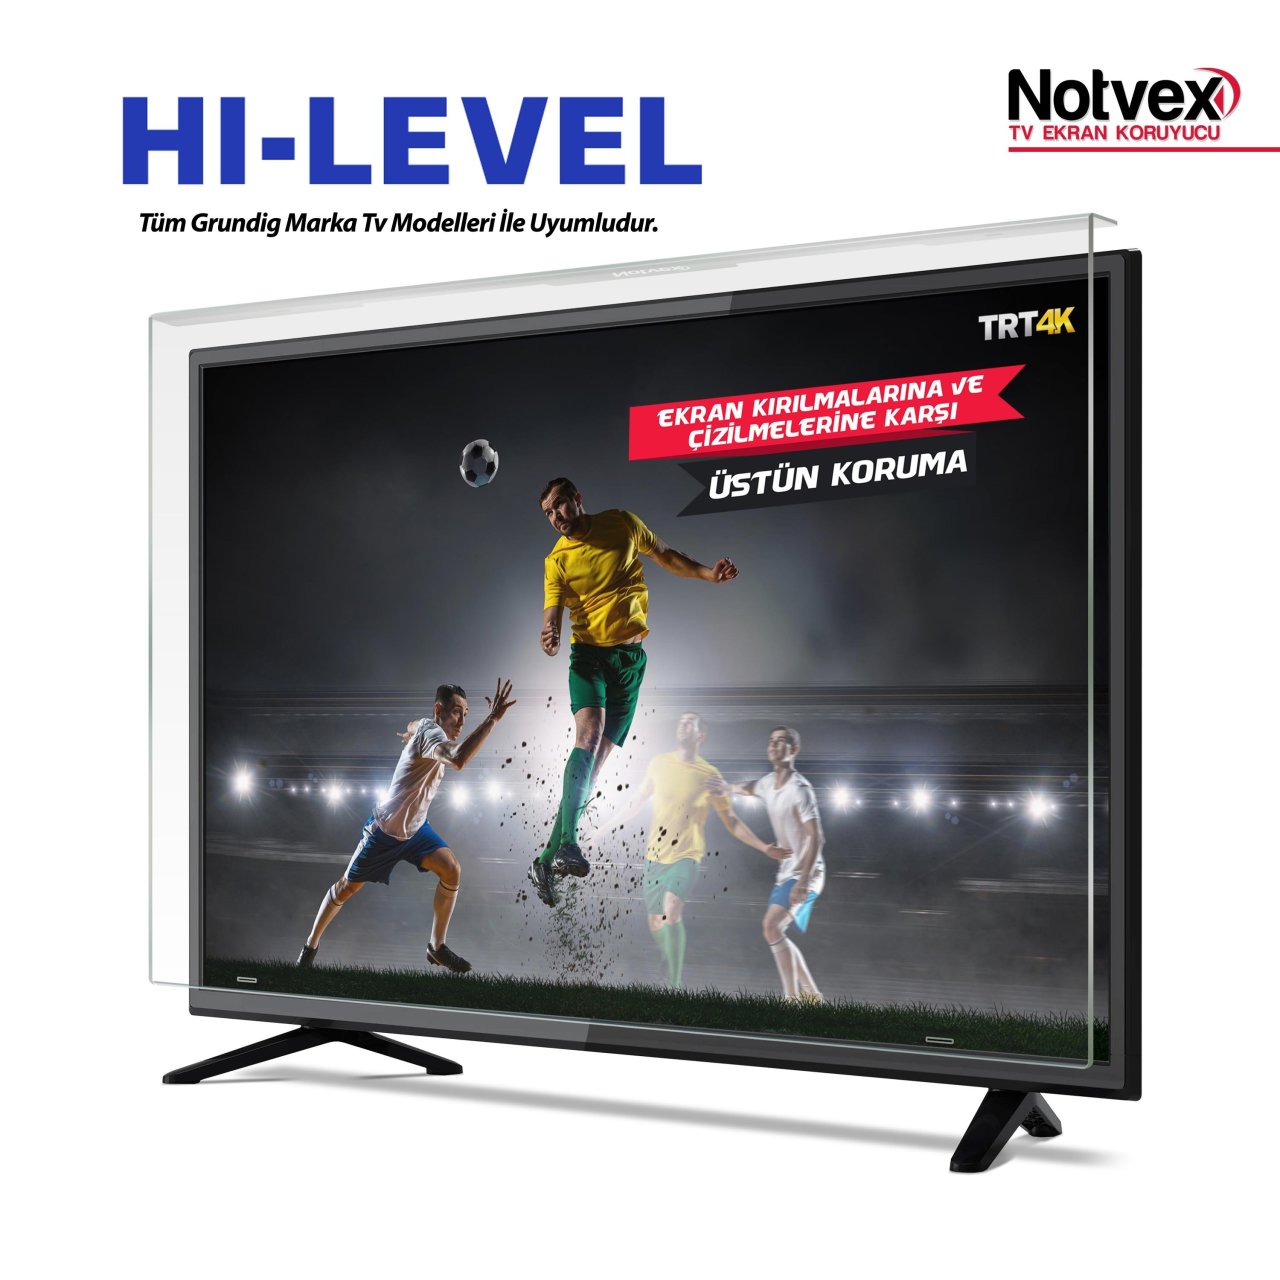 Hi-Level 50HL500 Uyumlu TV Ekran Koruyucu